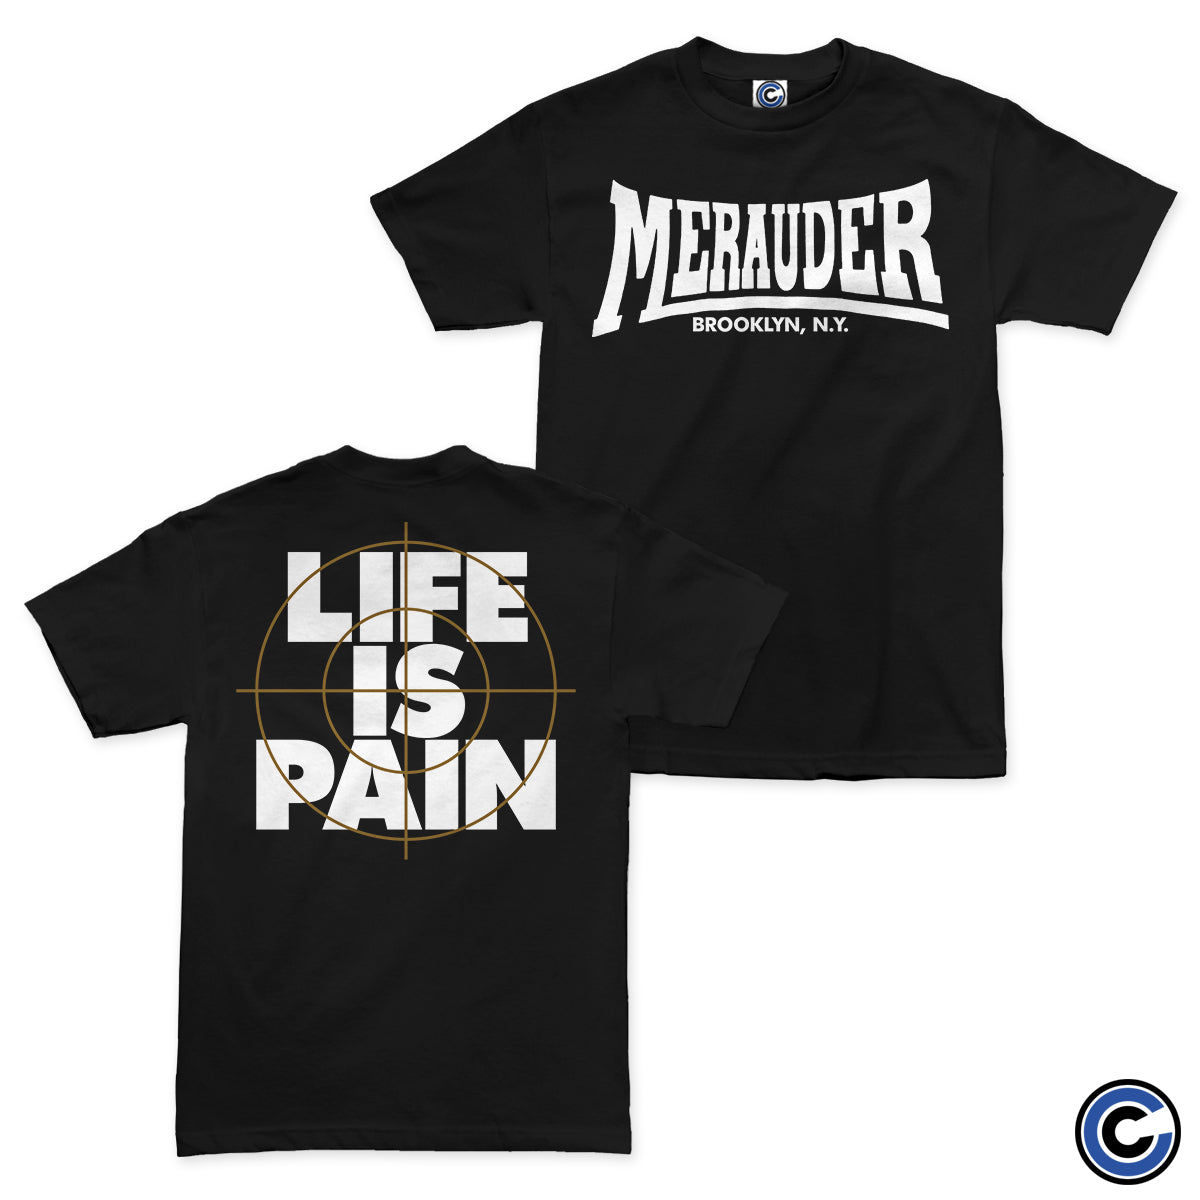 Merauder "Life Is Pain Demo" Shirt